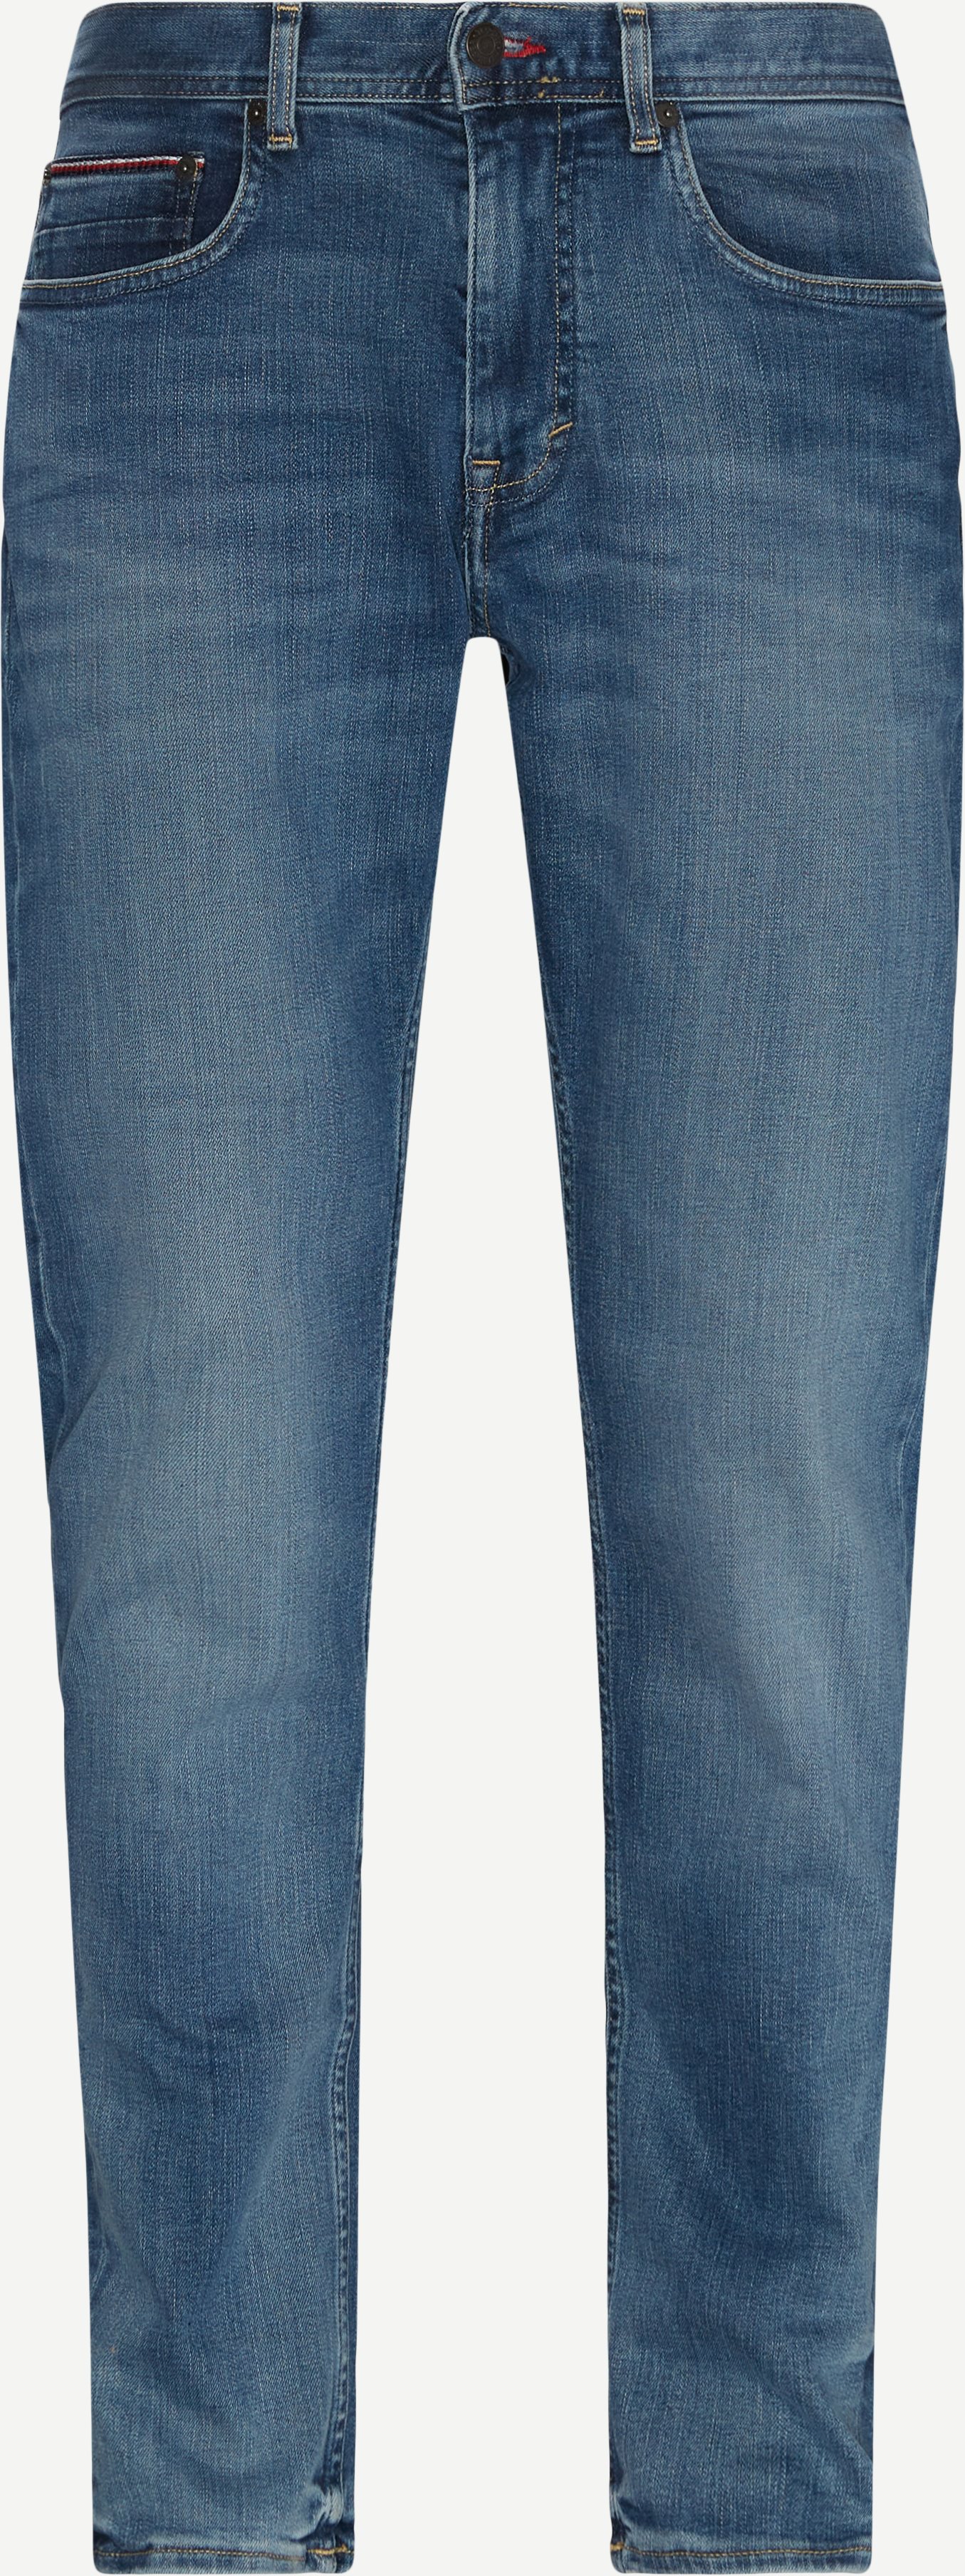 Tommy Hilfiger Jeans 19903 Denim